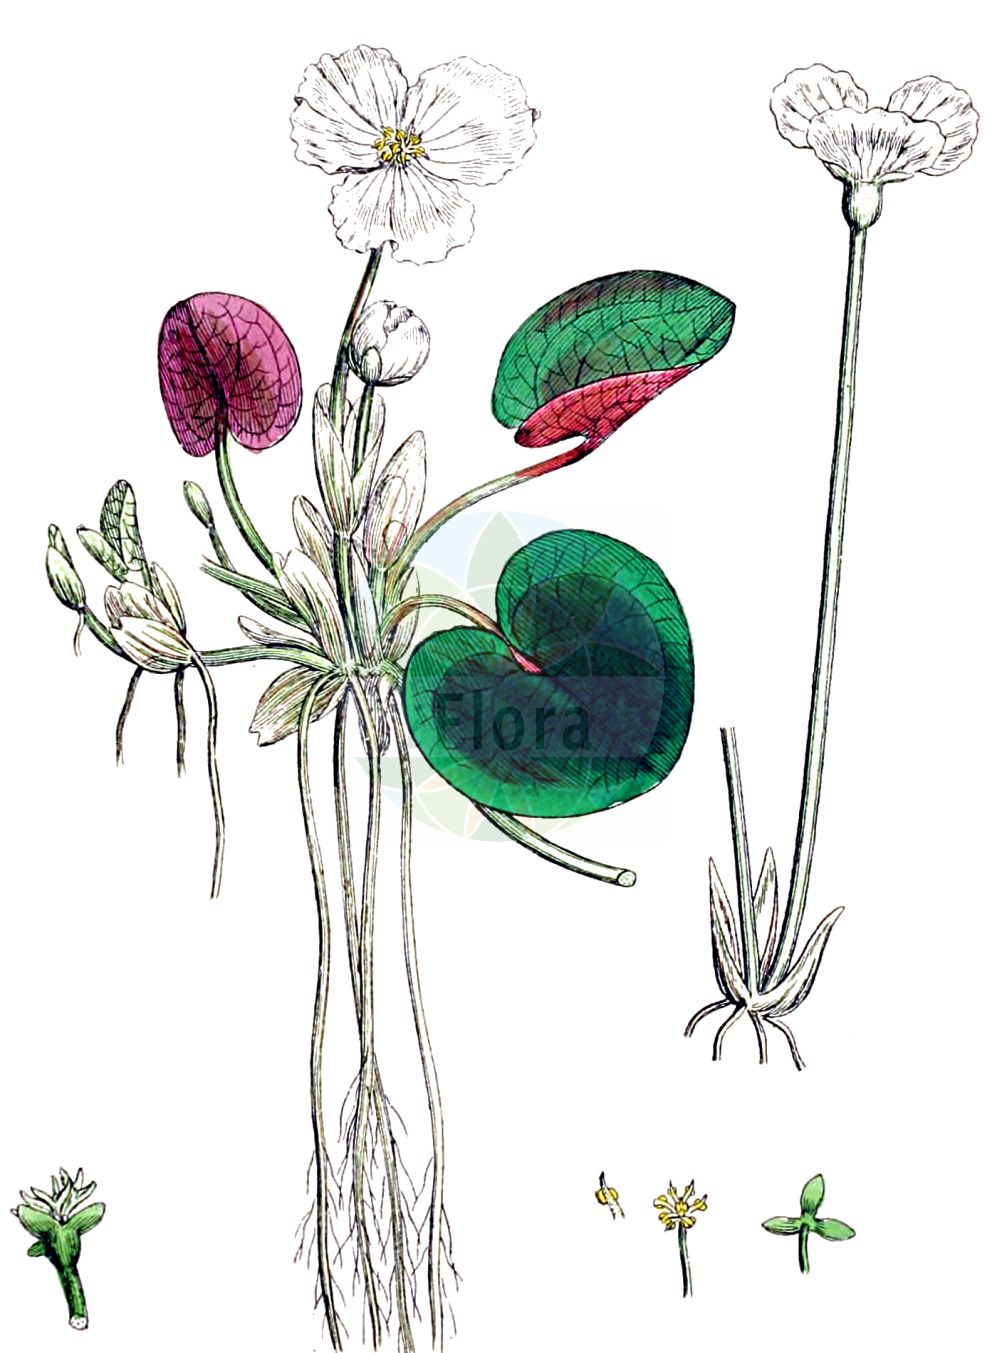 Historische Abbildung von Hydrocharis morsus-ranae (Europäischer Froschbiß - Frogbit). Das Bild zeigt Blatt, Bluete, Frucht und Same. ---- Historical Drawing of Hydrocharis morsus-ranae (Europäischer Froschbiß - Frogbit). The image is showing leaf, flower, fruit and seed.(Hydrocharis morsus-ranae,Europäischer Froschbiß,Frogbit,Hydrocharis morsus-ranae,Europaeischer Froschbiss,Froschbiss,Frogbit,European Frogbit,Common Frogbit,Hydrocharis,Froschbiß,Frogbit,Hydrocharitaceae,Froschbissgewächse,Frogbit family,Blatt,Bluete,Frucht,Same,leaf,flower,fruit,seed,Sowerby (1790-1813))